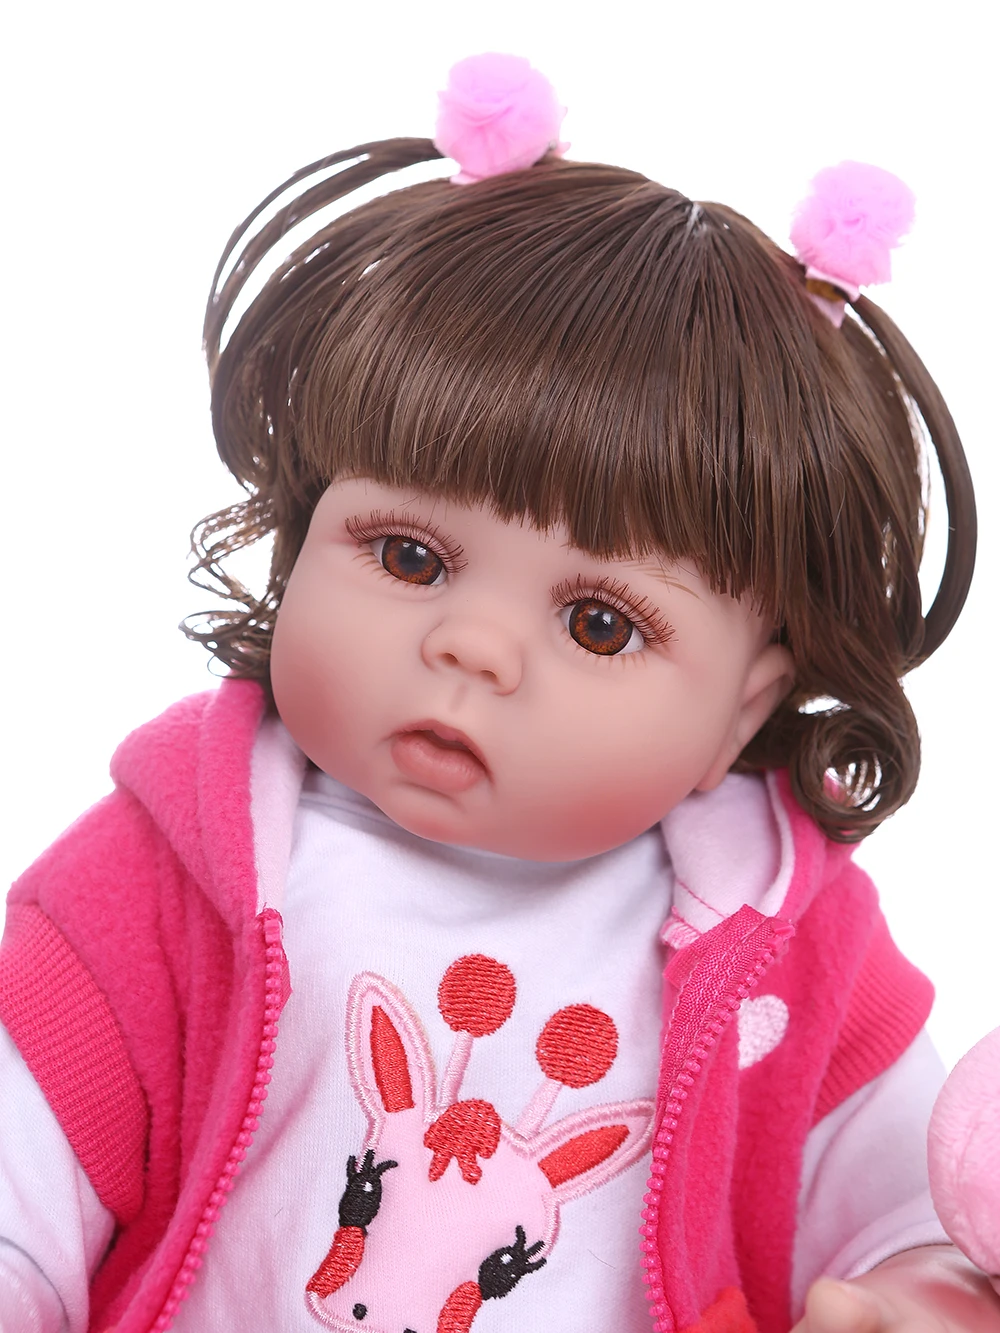 NPK 48 см кукла bebe младенец получивший новую жизнь девочка в розовом платье полный